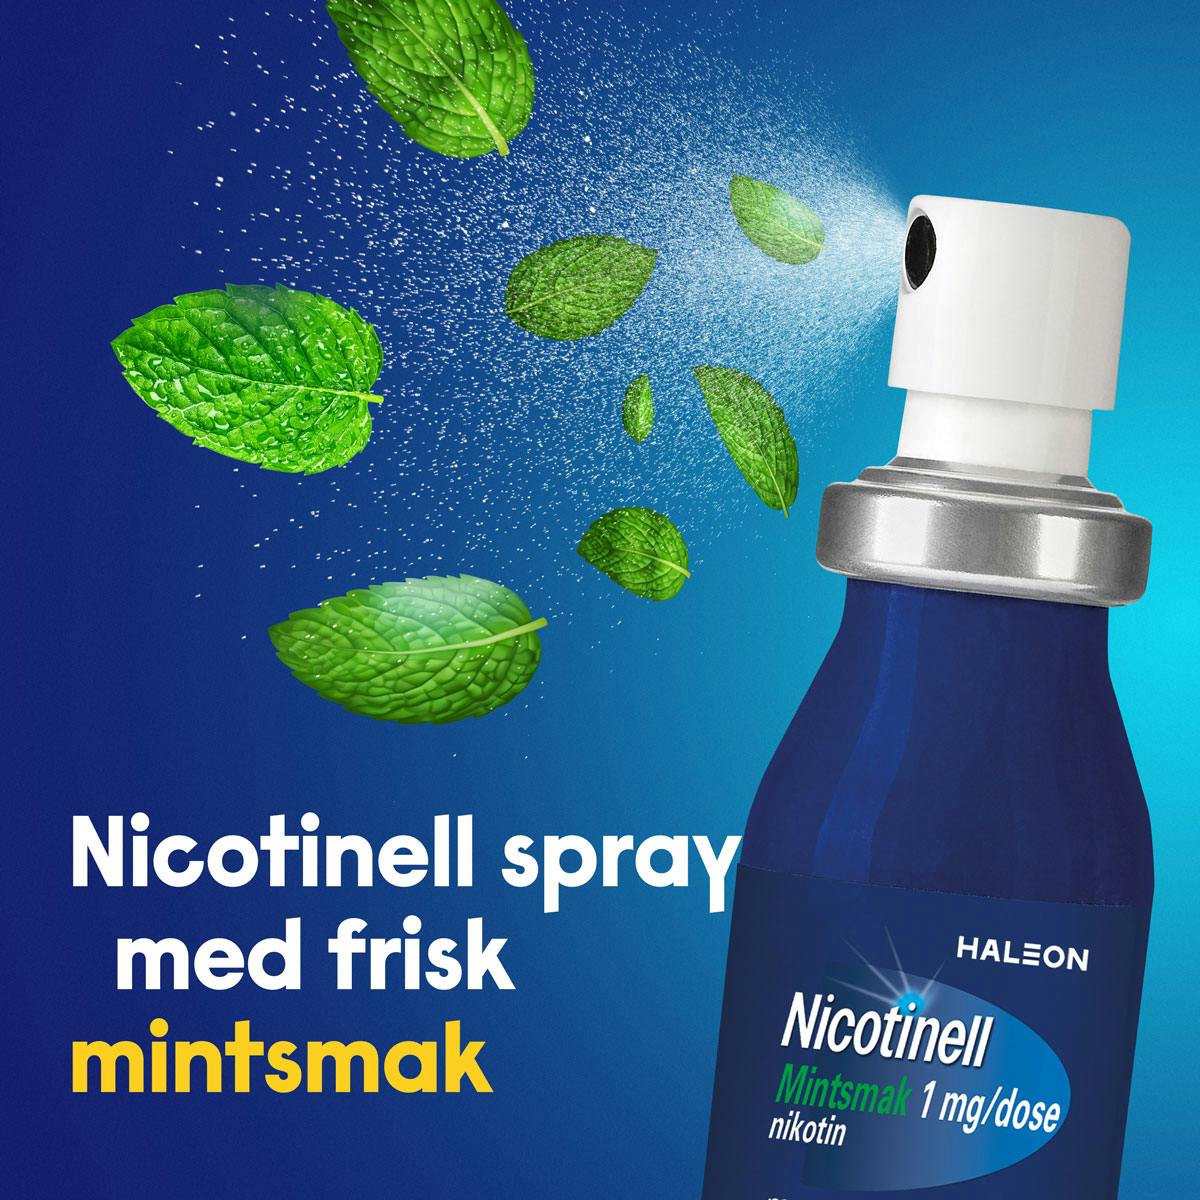 Nicotinell spray med frisk mintsmak